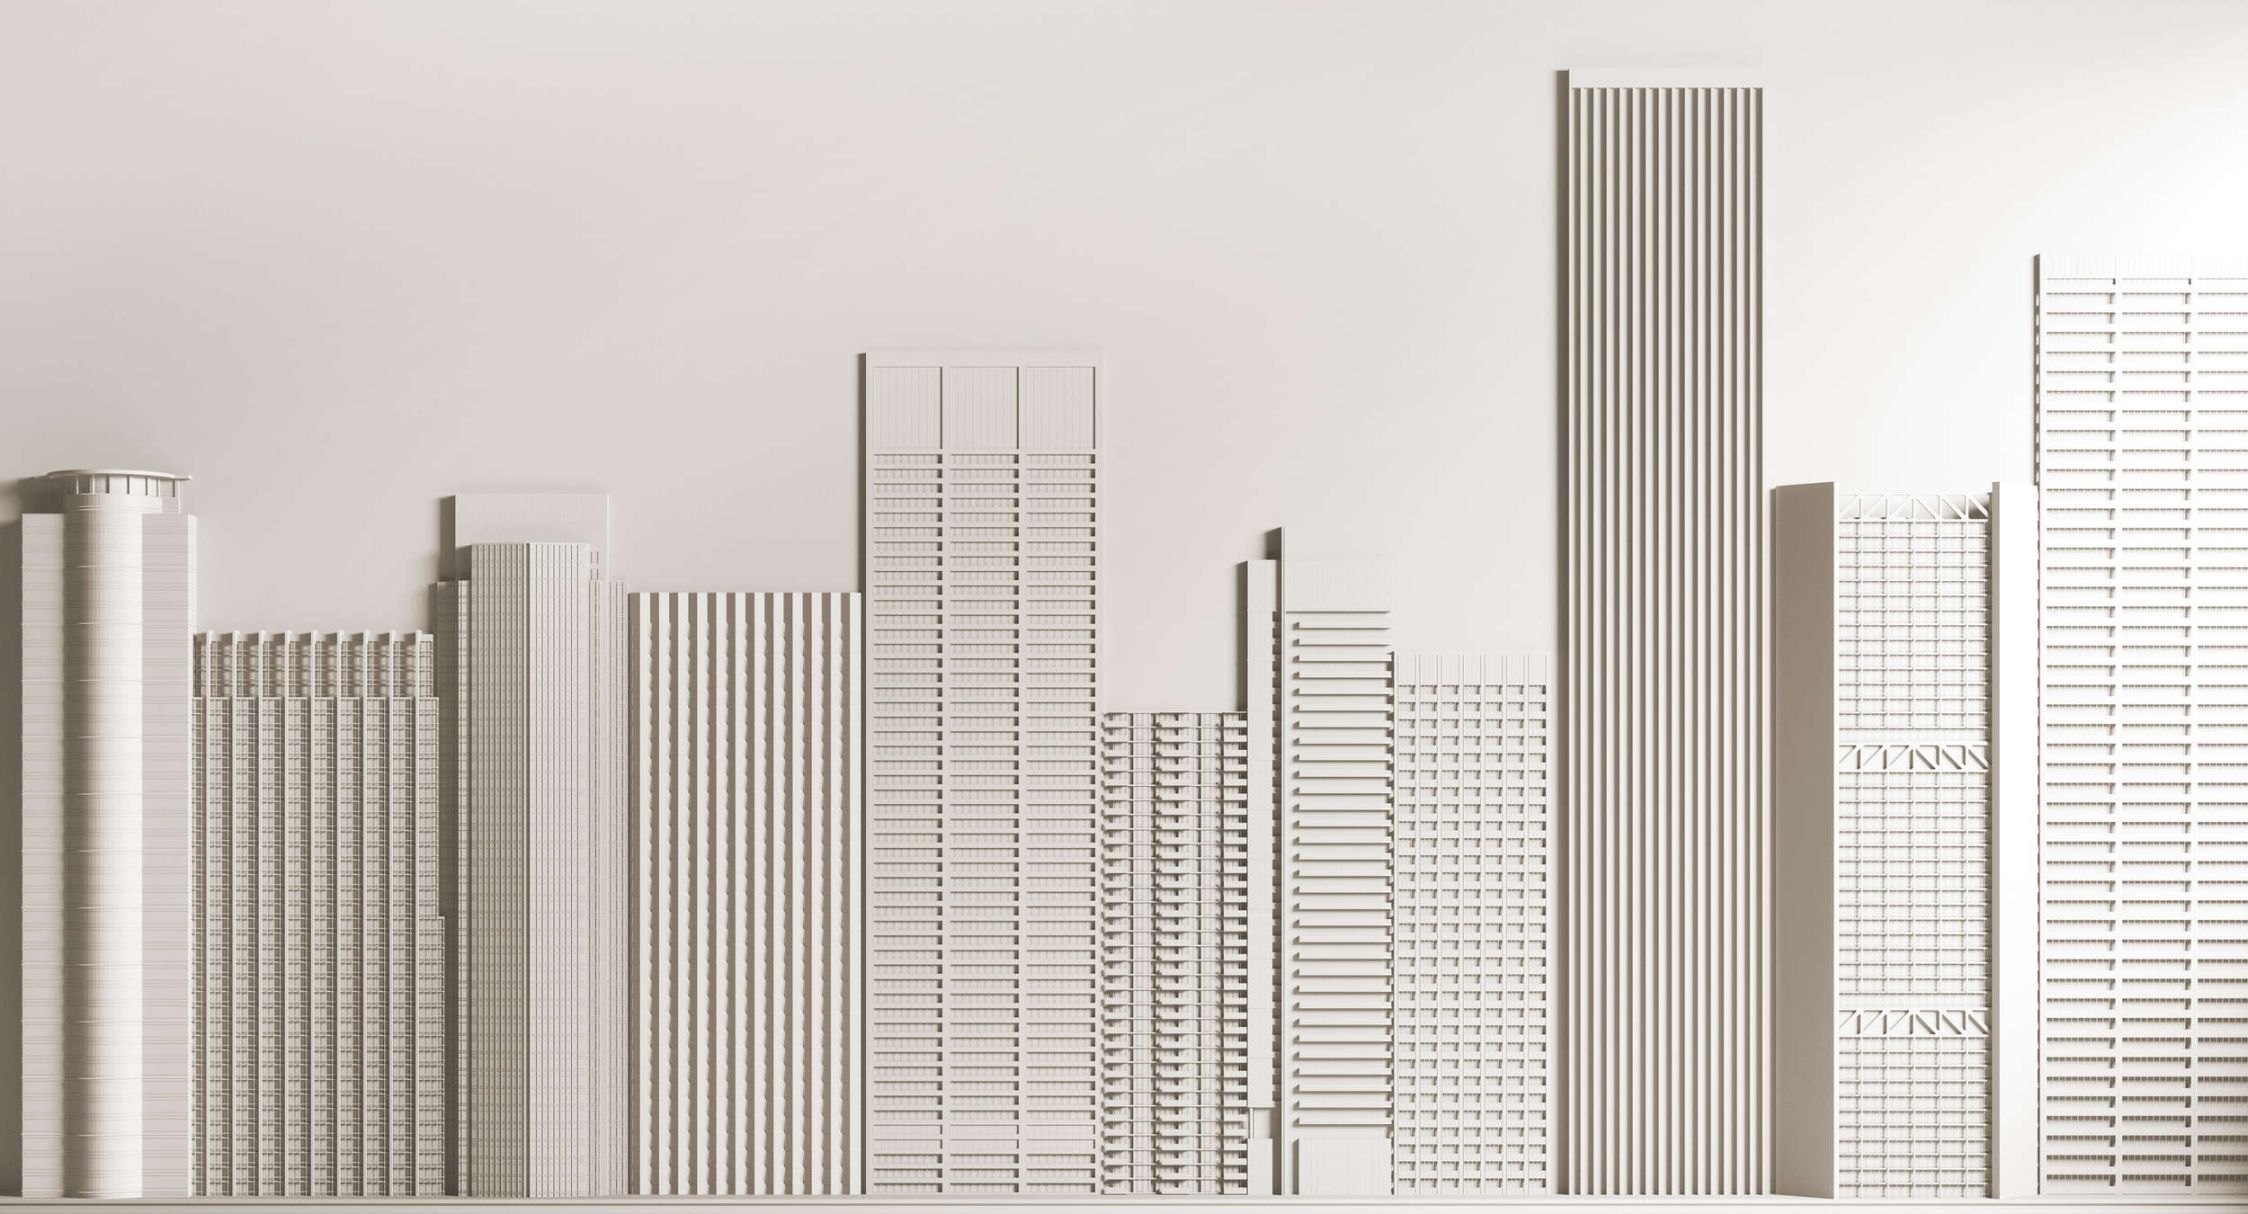             Digital behang »nieuwe skyline« - architectuur met wolkenkrabbers - matte, gladde vliesstof
        